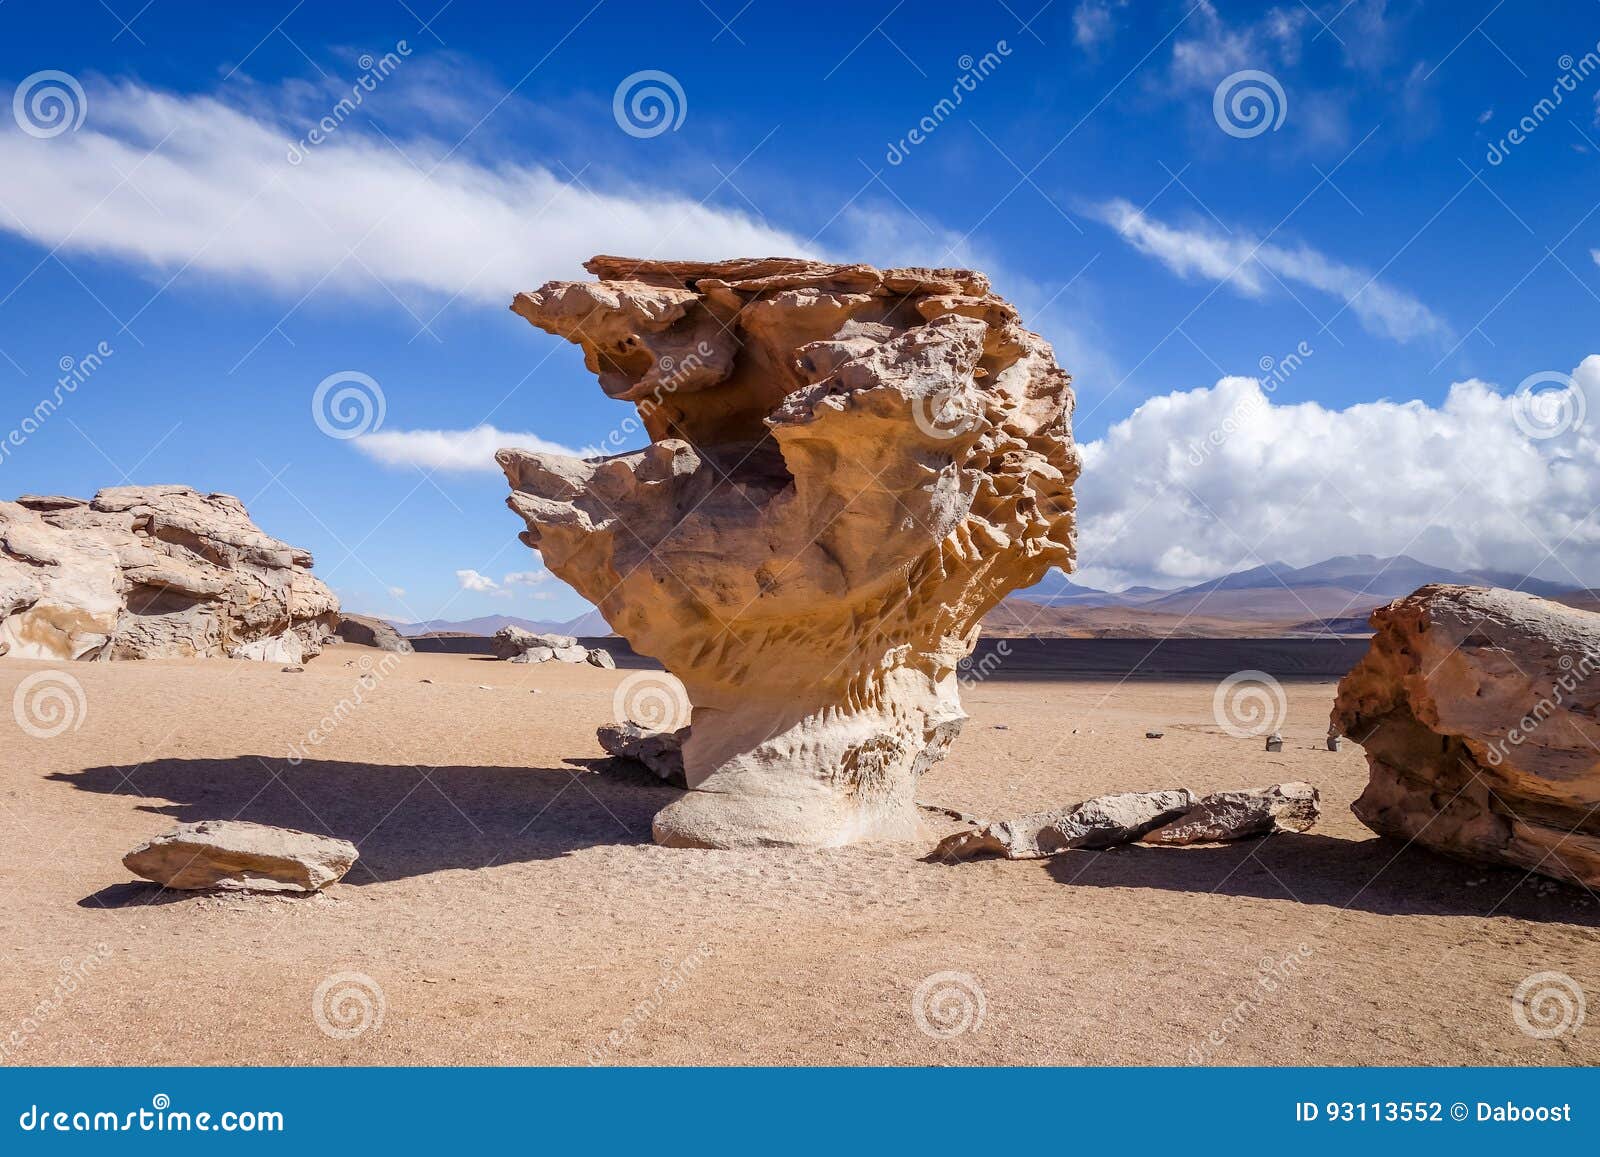 arbol de piedra in siloli desert, sud lipez reserva, bolivia